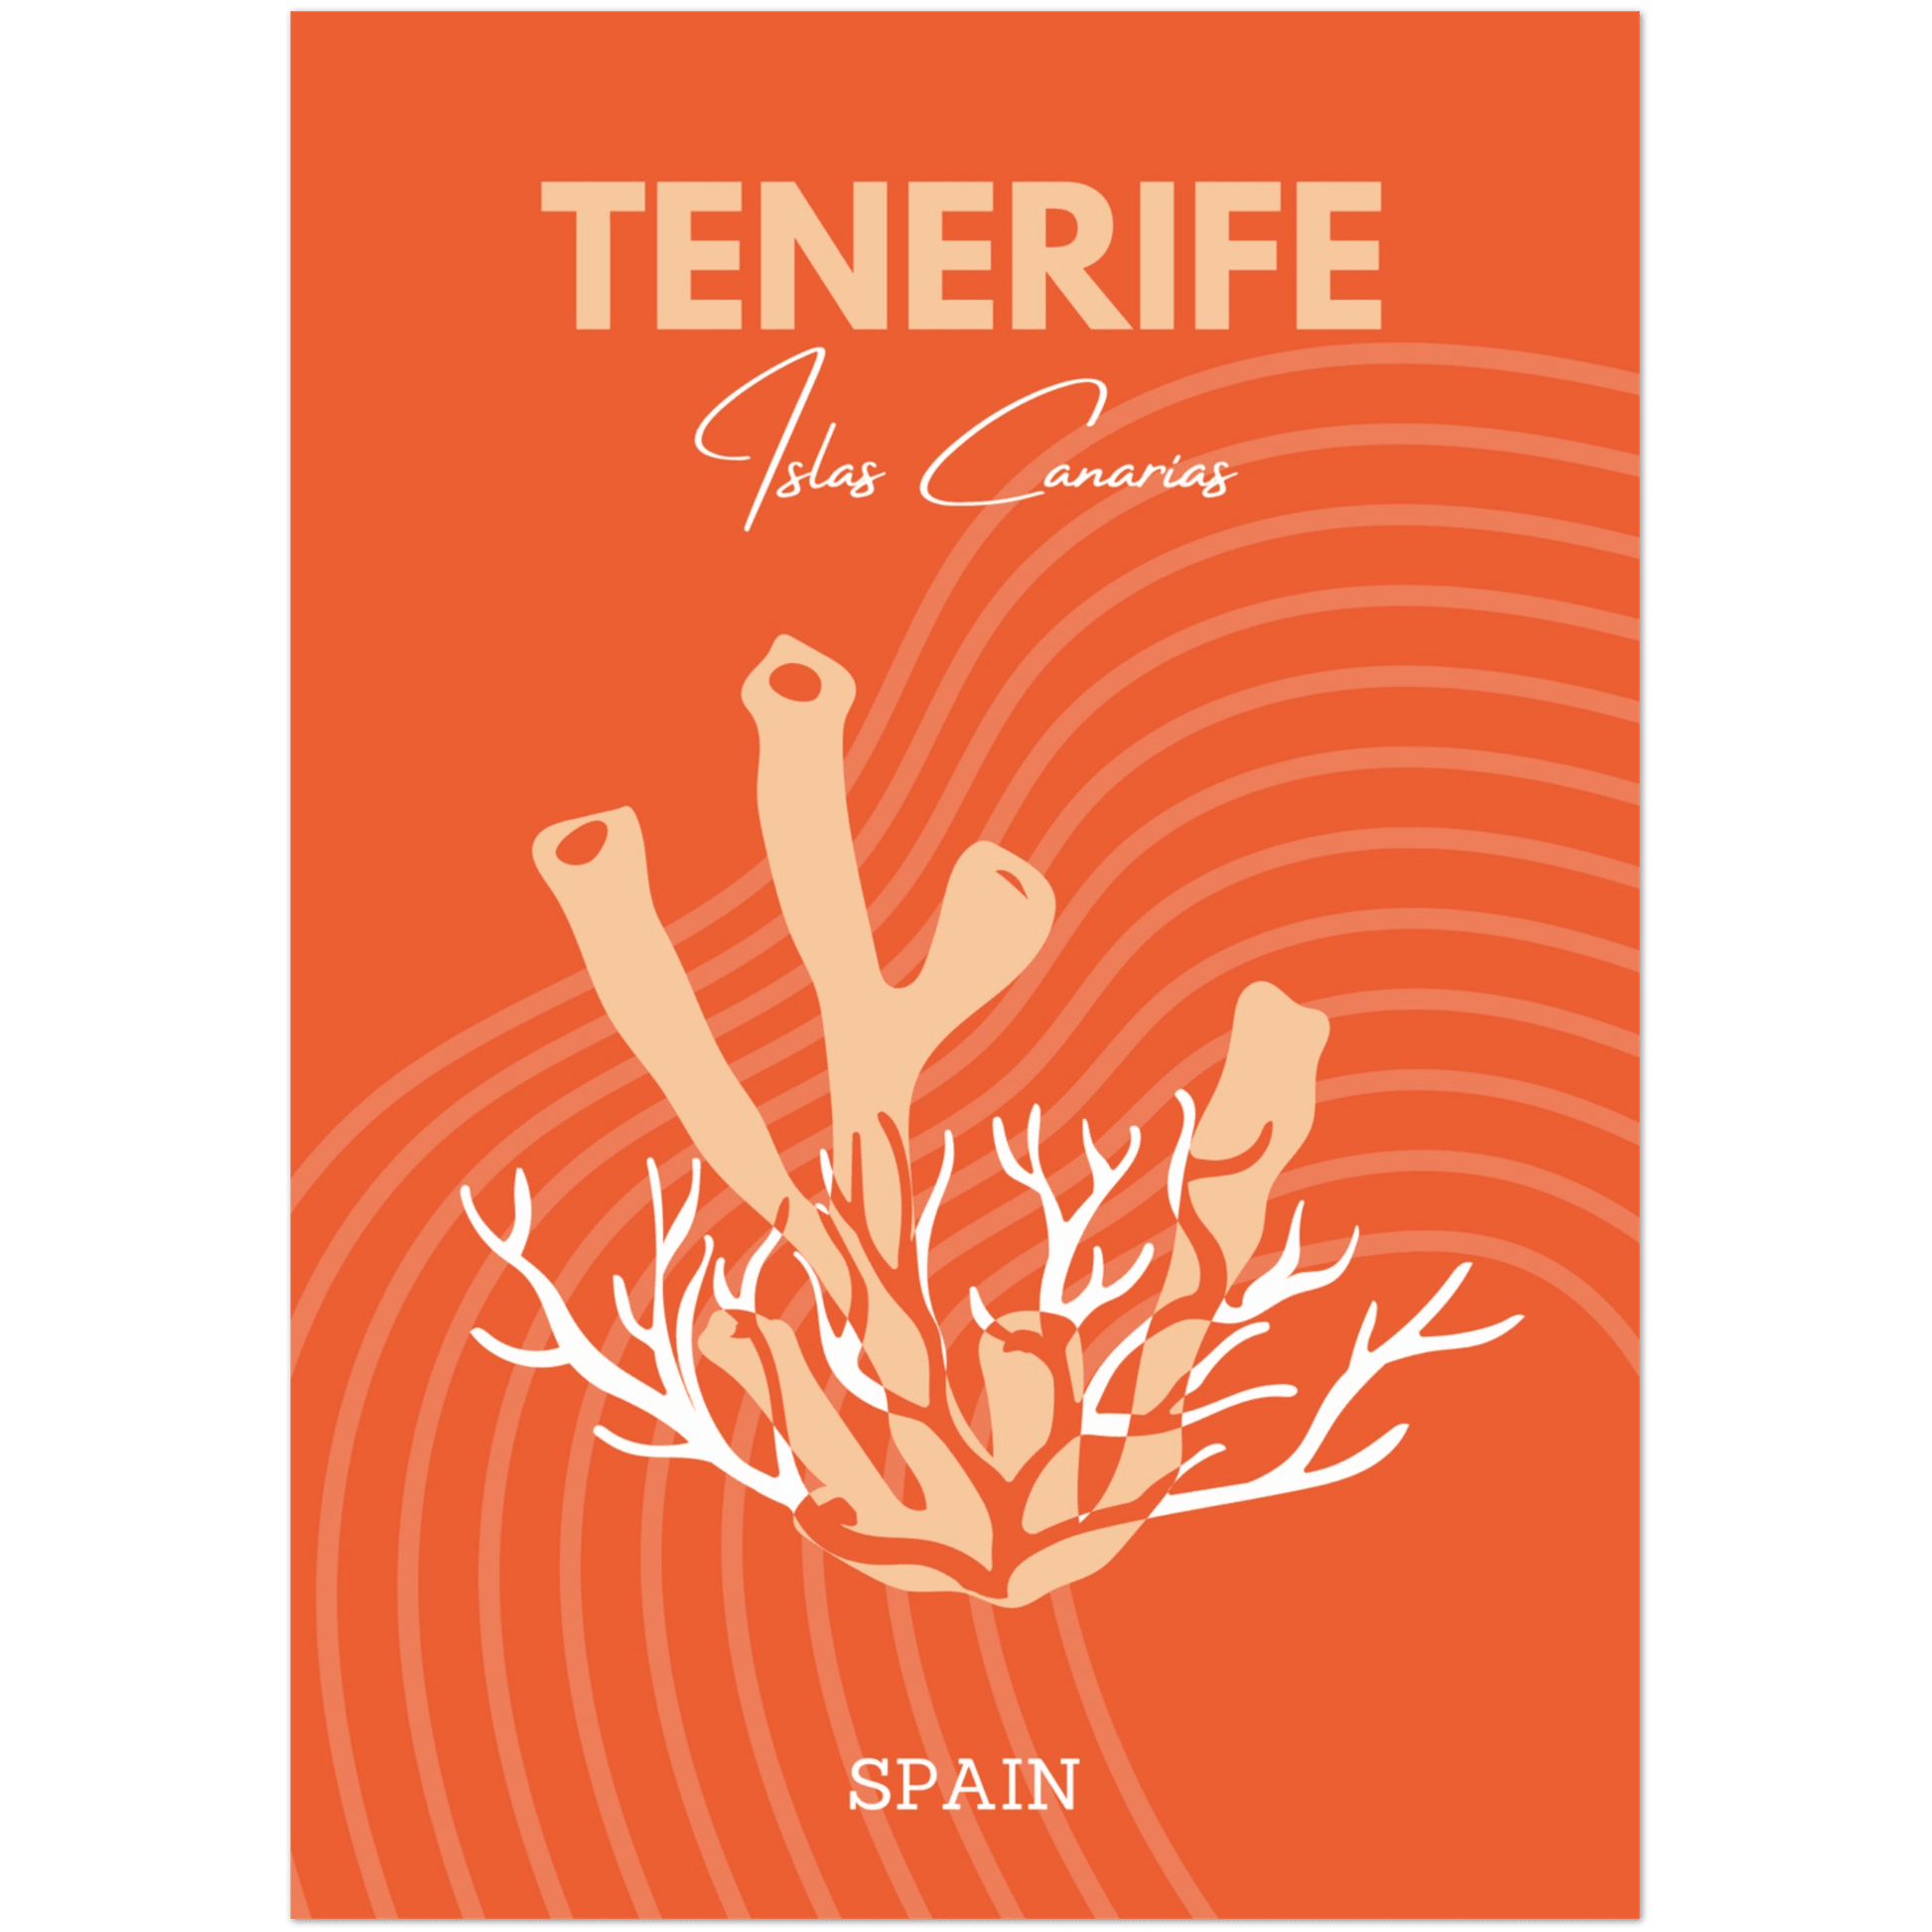 Tenerife - A4, A3, A2 Posters Base - Poster Print Shop / Art Prints / PostersBase